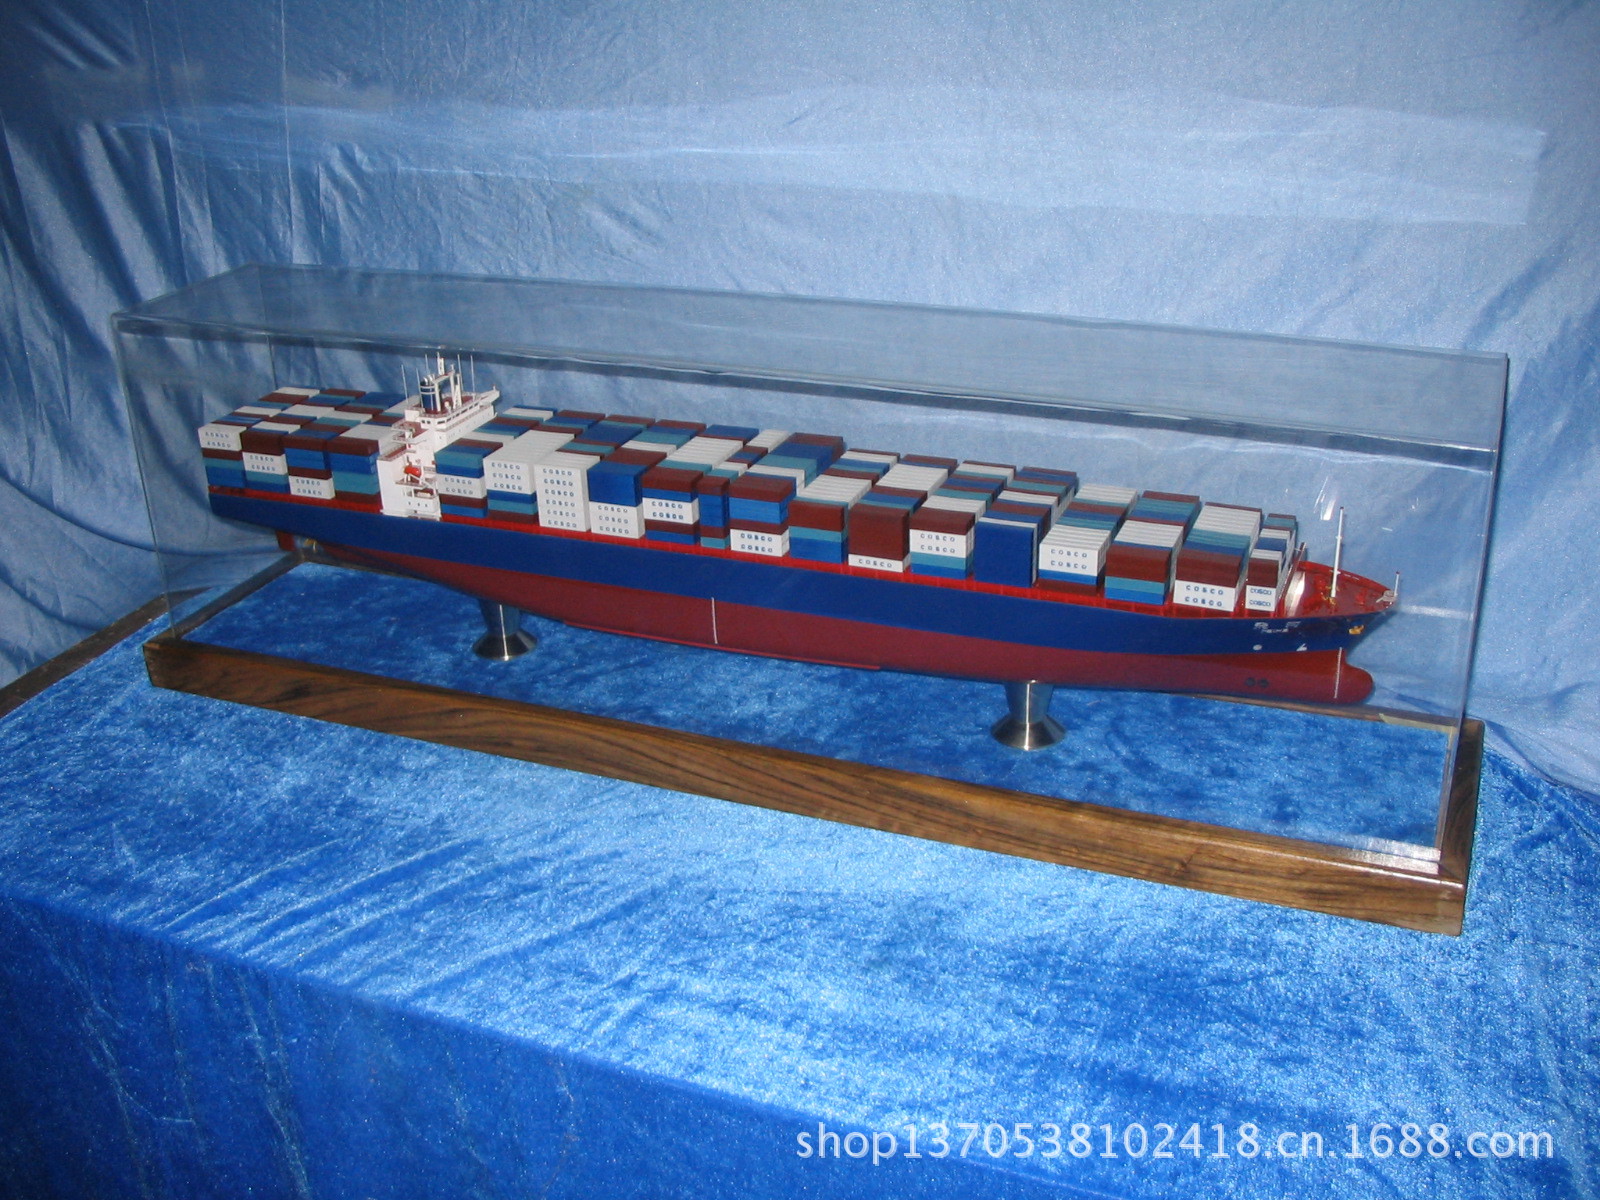 【集装箱船模型,集装箱船模型加工订制,集装箱